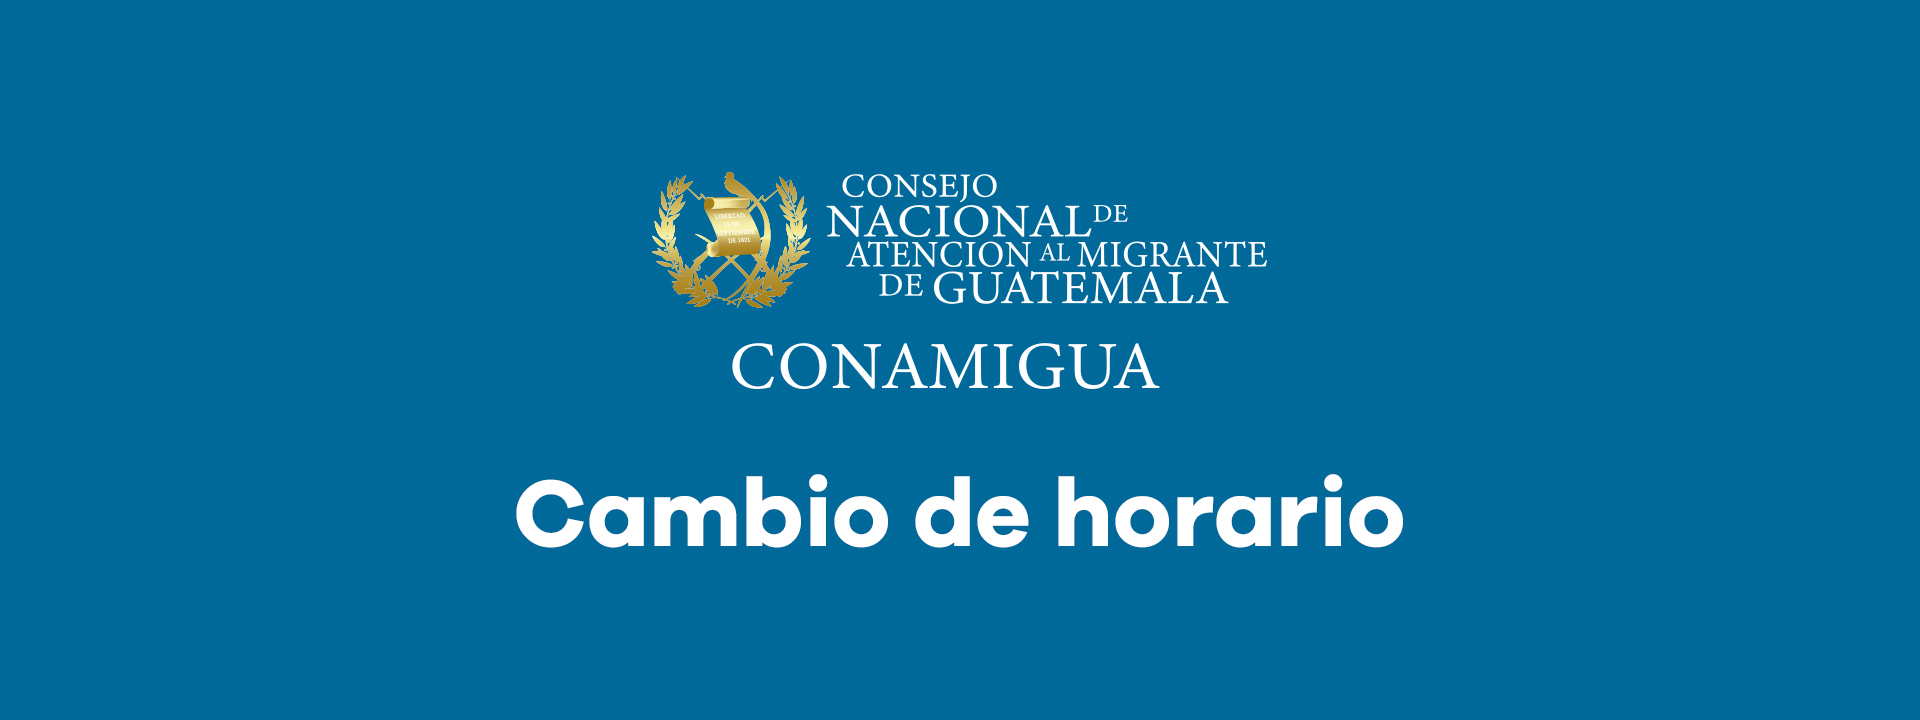 CAMBIO DE HORARIO PARA LA ATENCIÓN AL PÚBLICO EN LA SEDE CENTRAL DEL CONAMIGUA